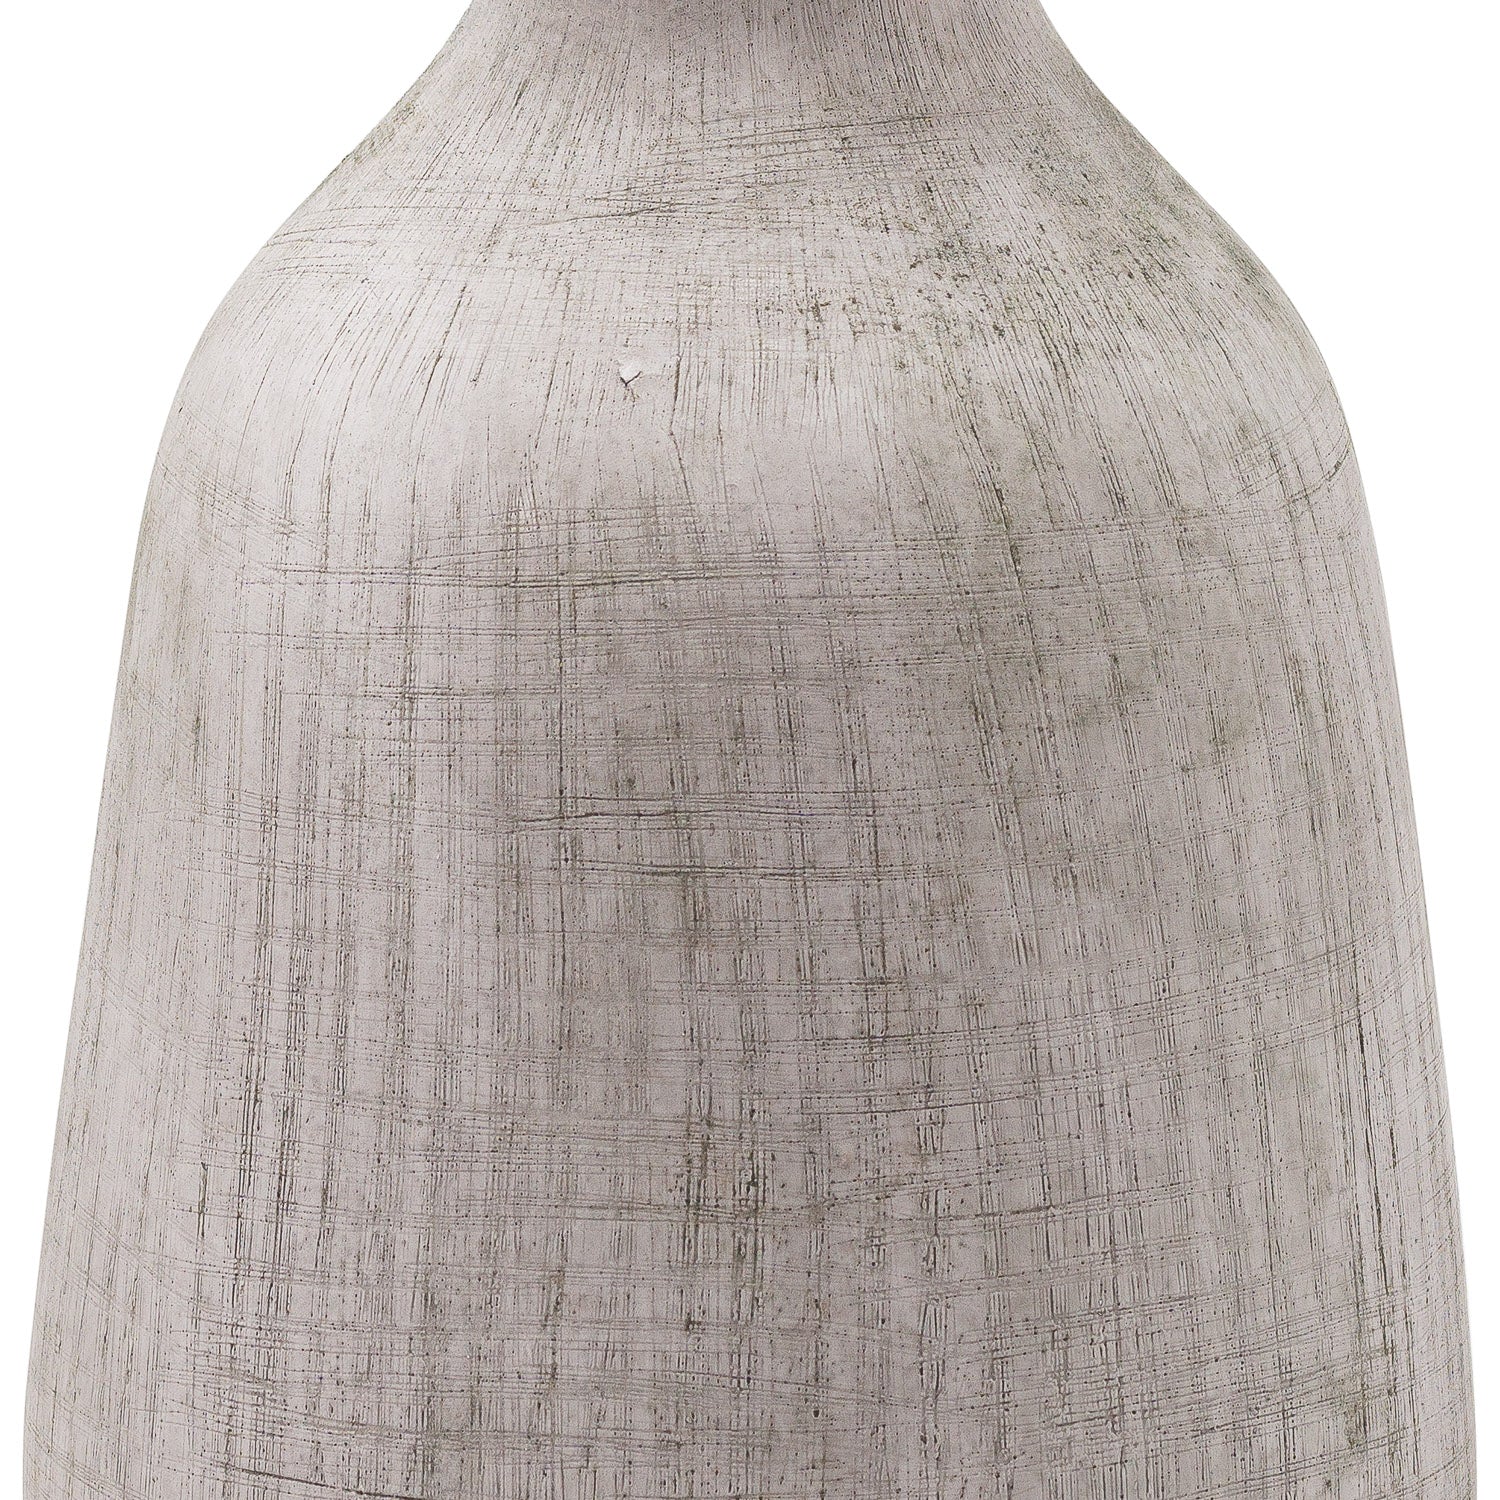 Bloomville Ople Stone Vase